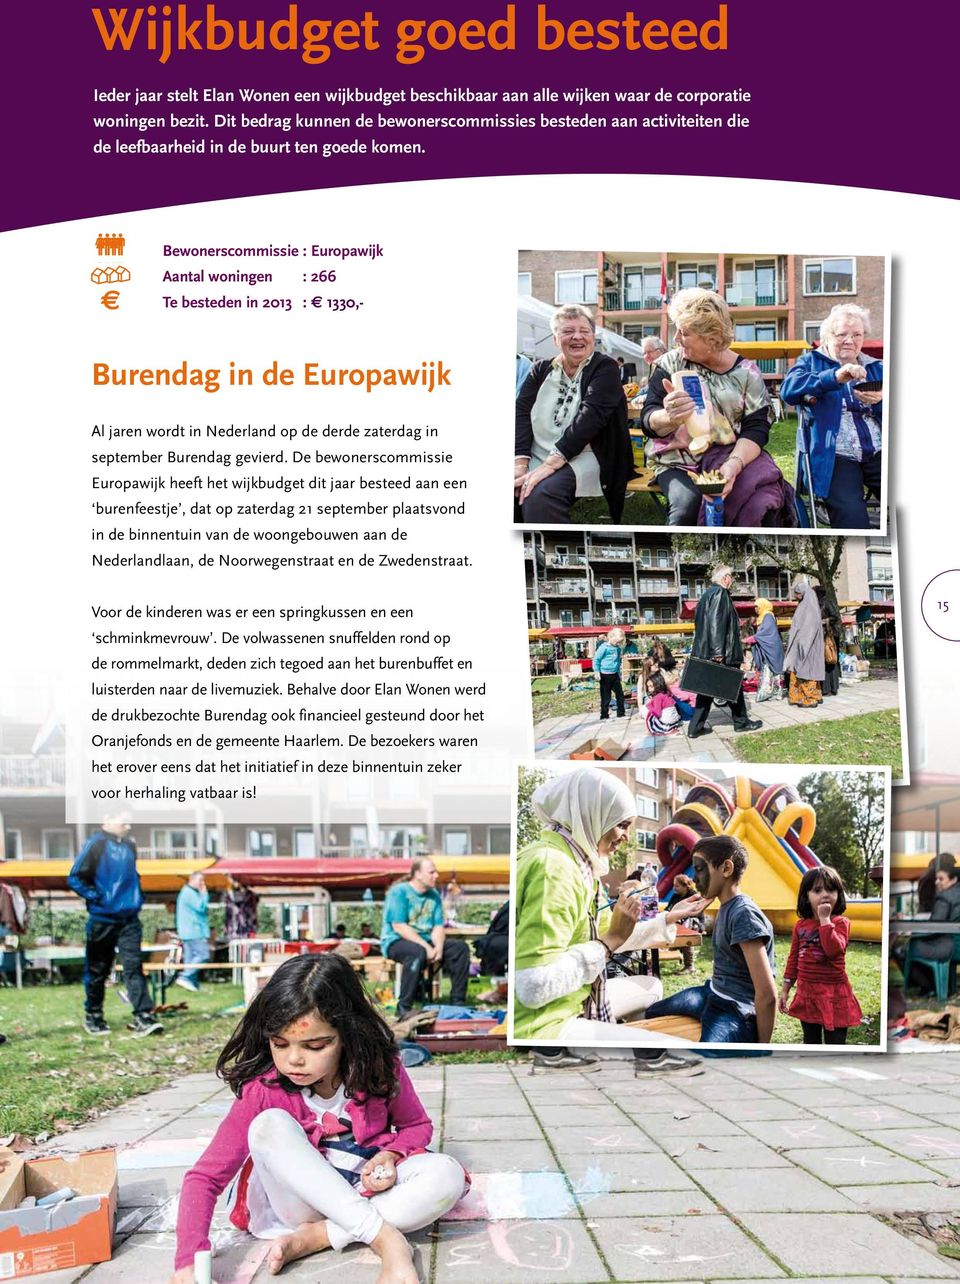 Bewonerscommissie : Europawijk Aantal woningen : 266 Te besteden in 2013 : 1330,- Burendag in de Europawijk Al jaren wordt in Nederland op de derde zaterdag in september Burendag gevierd.